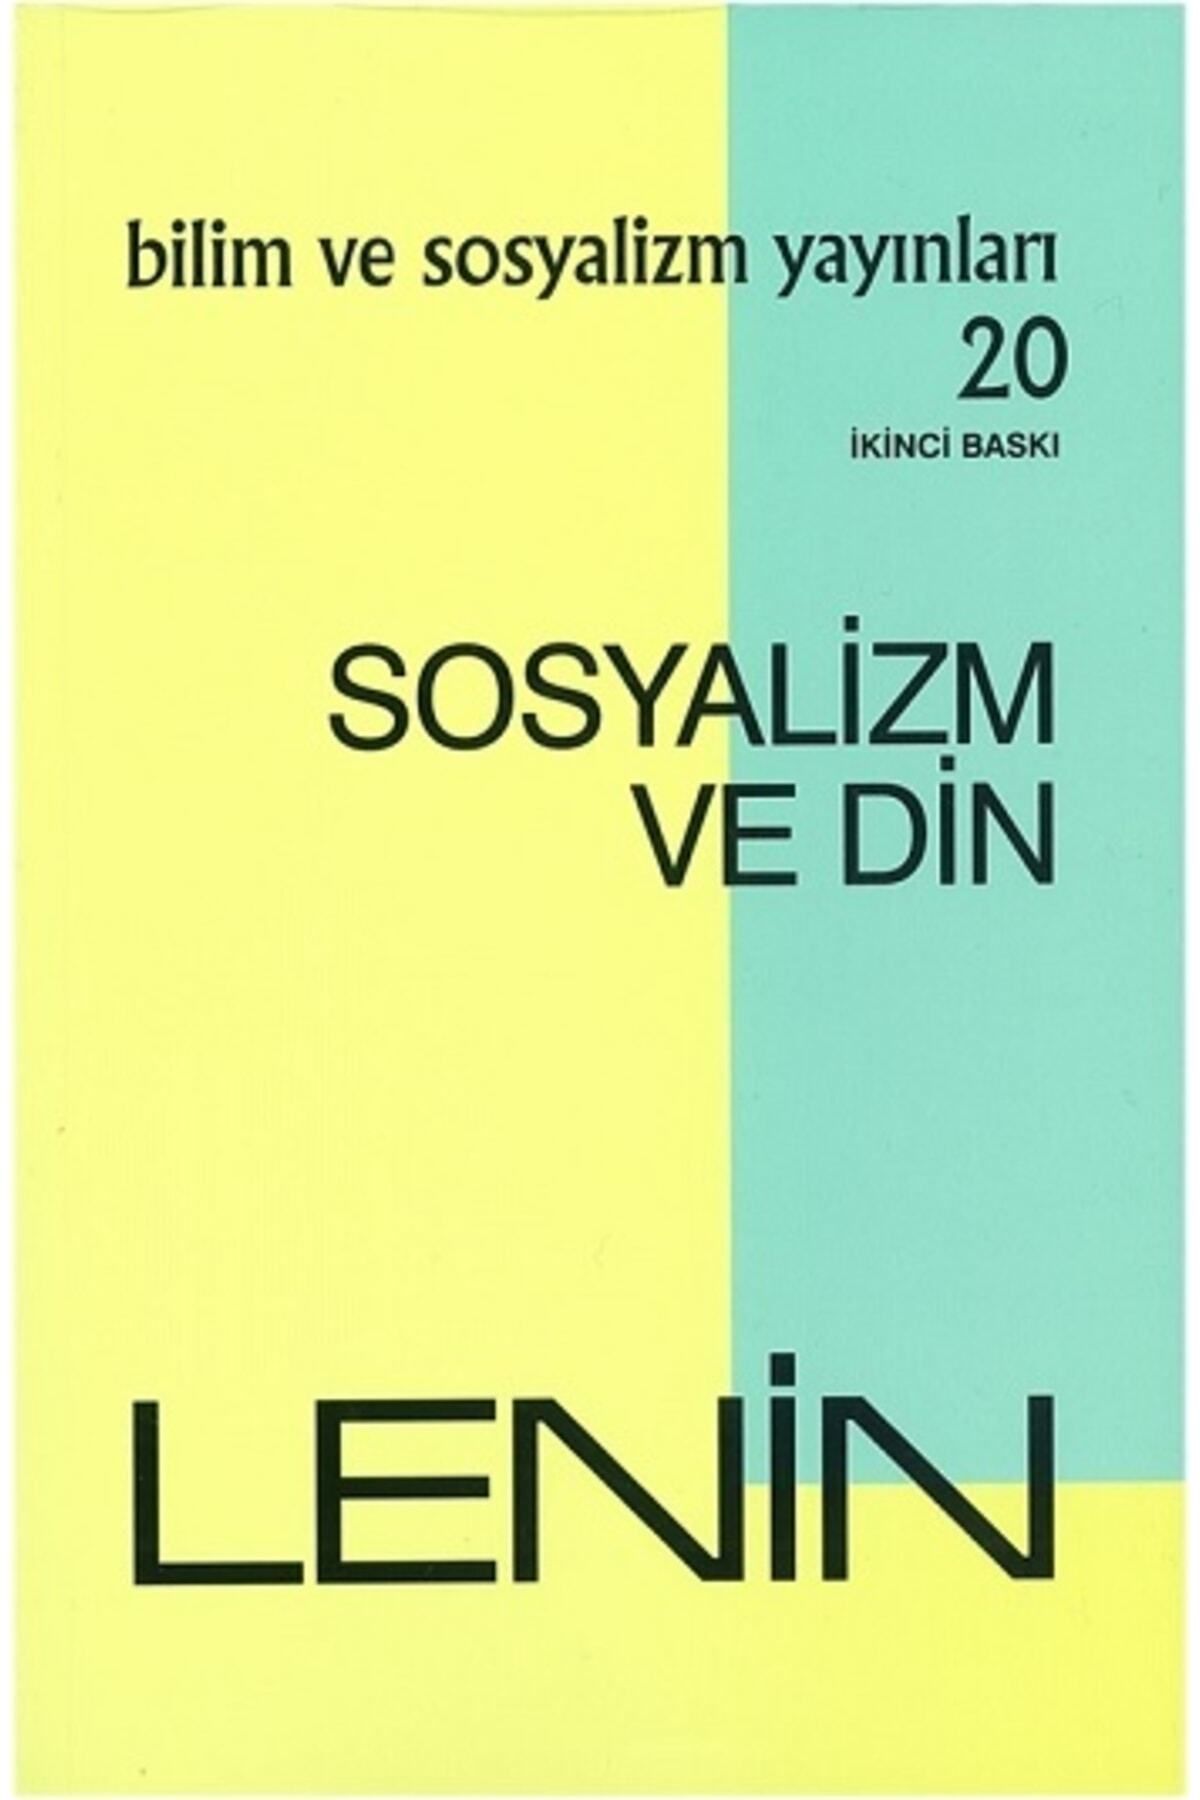 Bilim ve Sosyalizm Yayınları Sosyalizm Ve Din -Bilim ve Sosyalizm Yayınları-Lenin